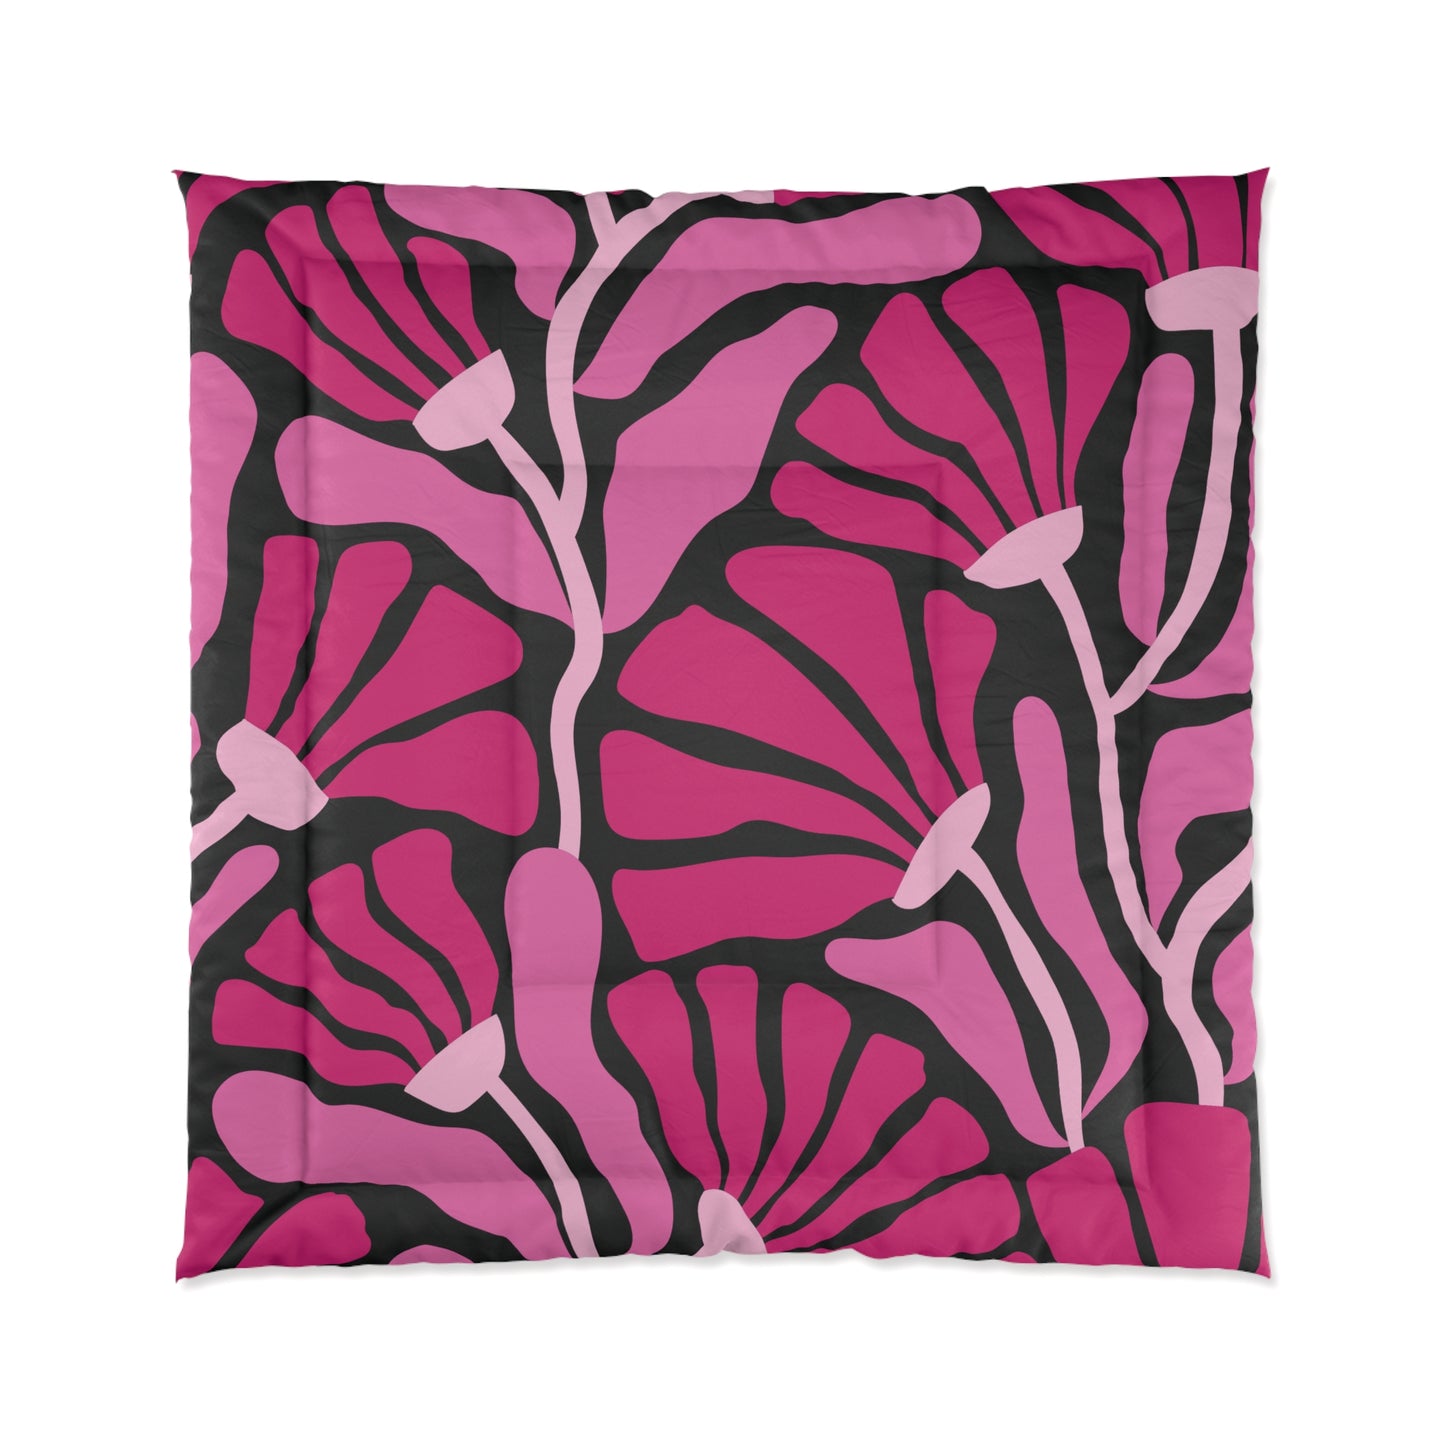 Groovy Mod Minimalist Flowers MCM Black & Pink Comforter